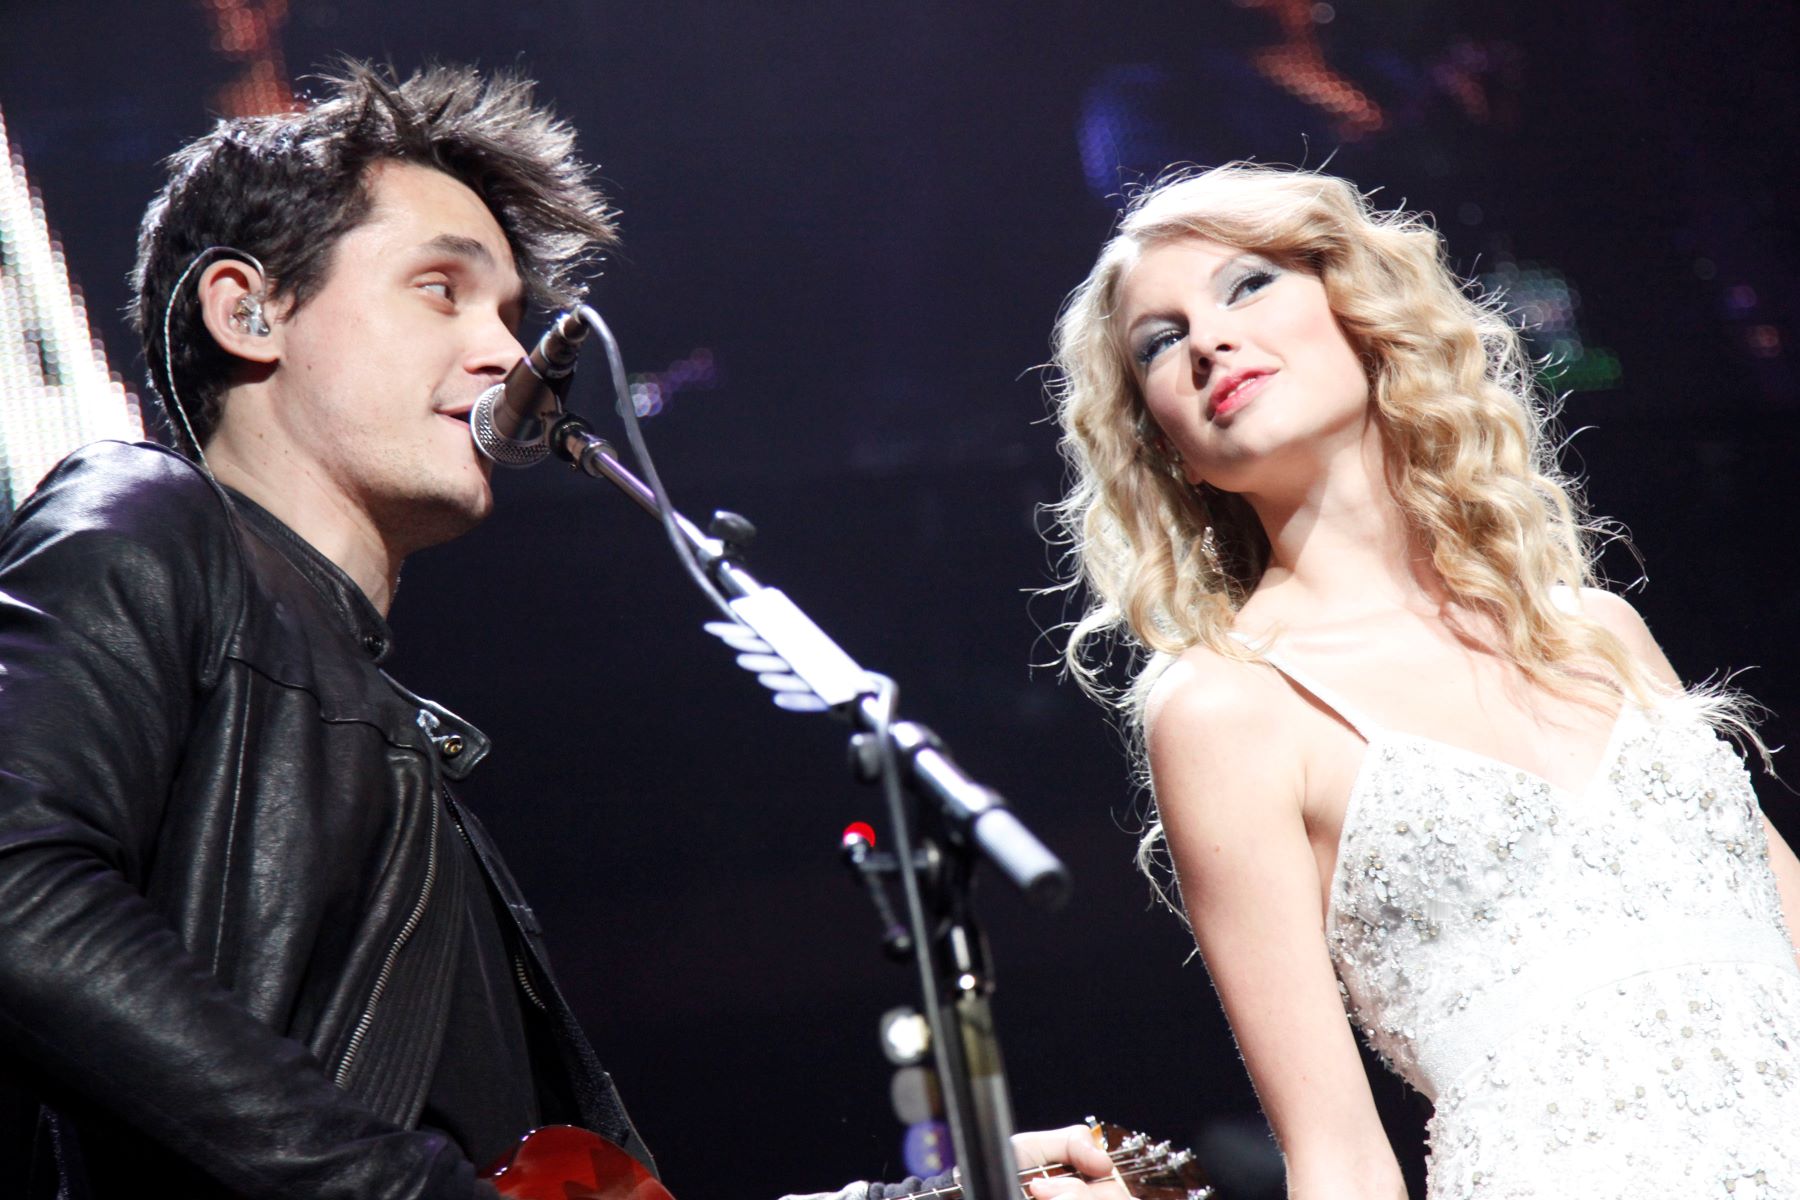 John Mayer and Taylor Swift attend Z100 JINGLE BALL 2009